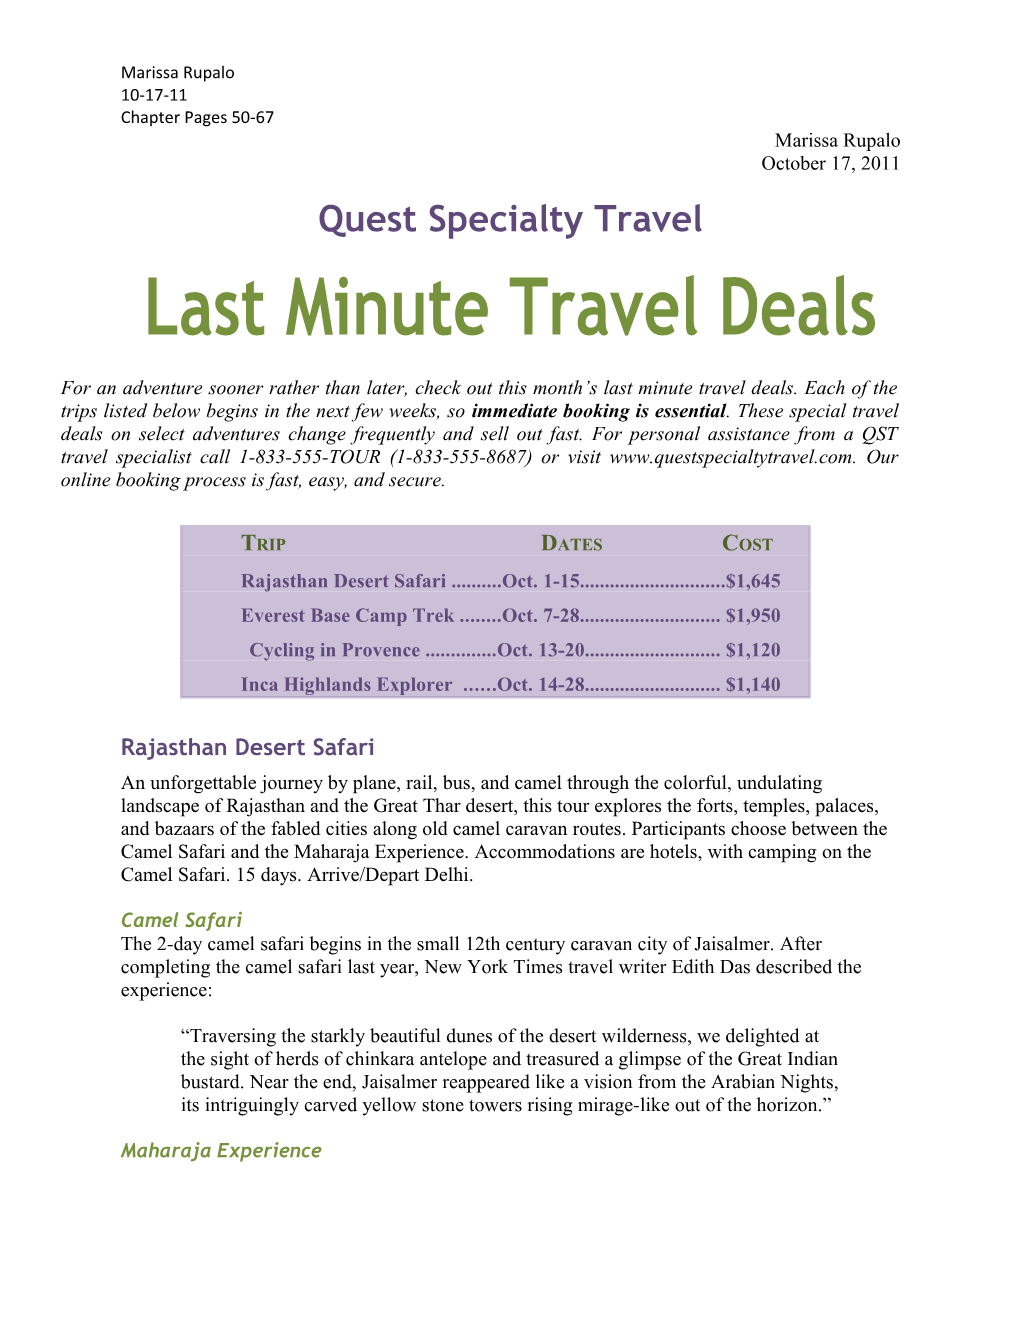 Last Minute Travel Deals